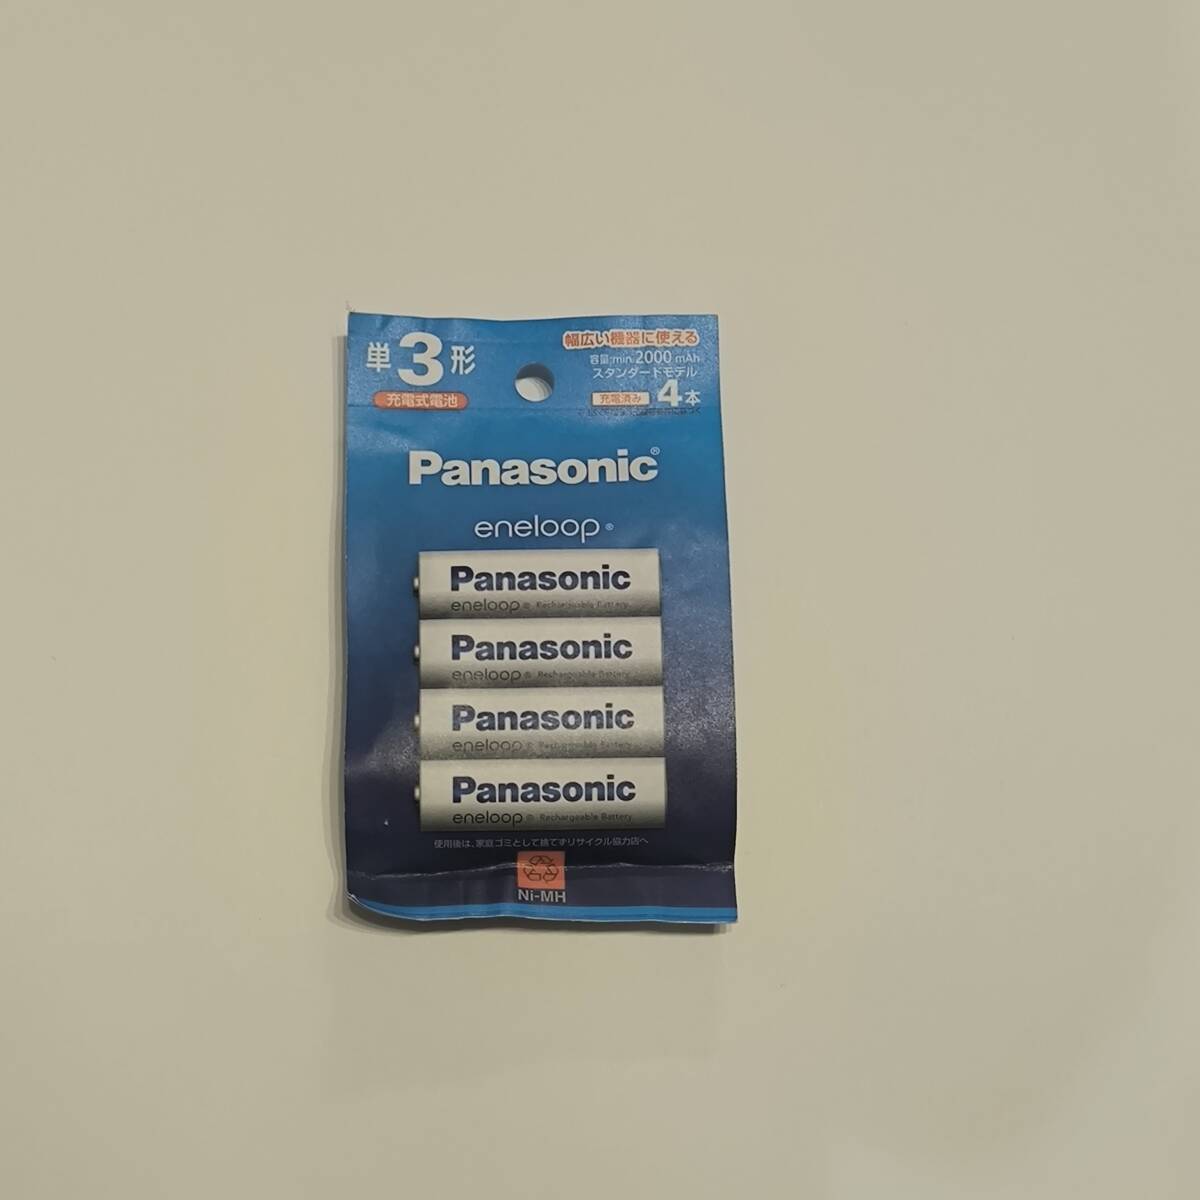  Panasonic lPanasonic single 3 shape Nickel-Metal Hydride battery / Eneloop standard model 4ps.@ pack BK-3MCDK/4H [4ps.@]